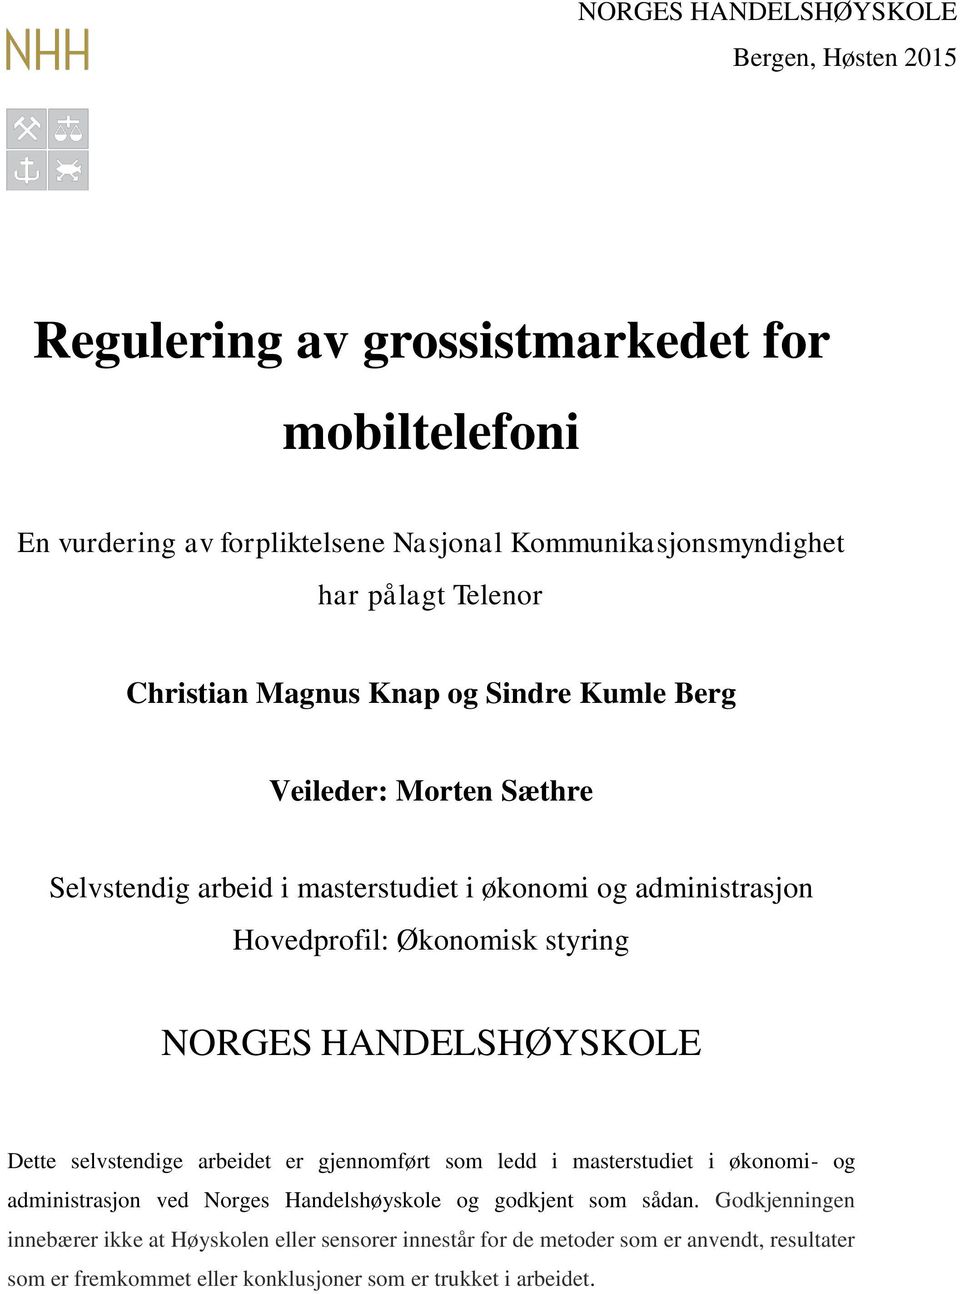 NORGES HANDELSHØYSKOLE Dette selvstendige arbeidet er gjennomført som ledd i masterstudiet i økonomi- og administrasjon ved Norges Handelshøyskole og godkjent som sådan.